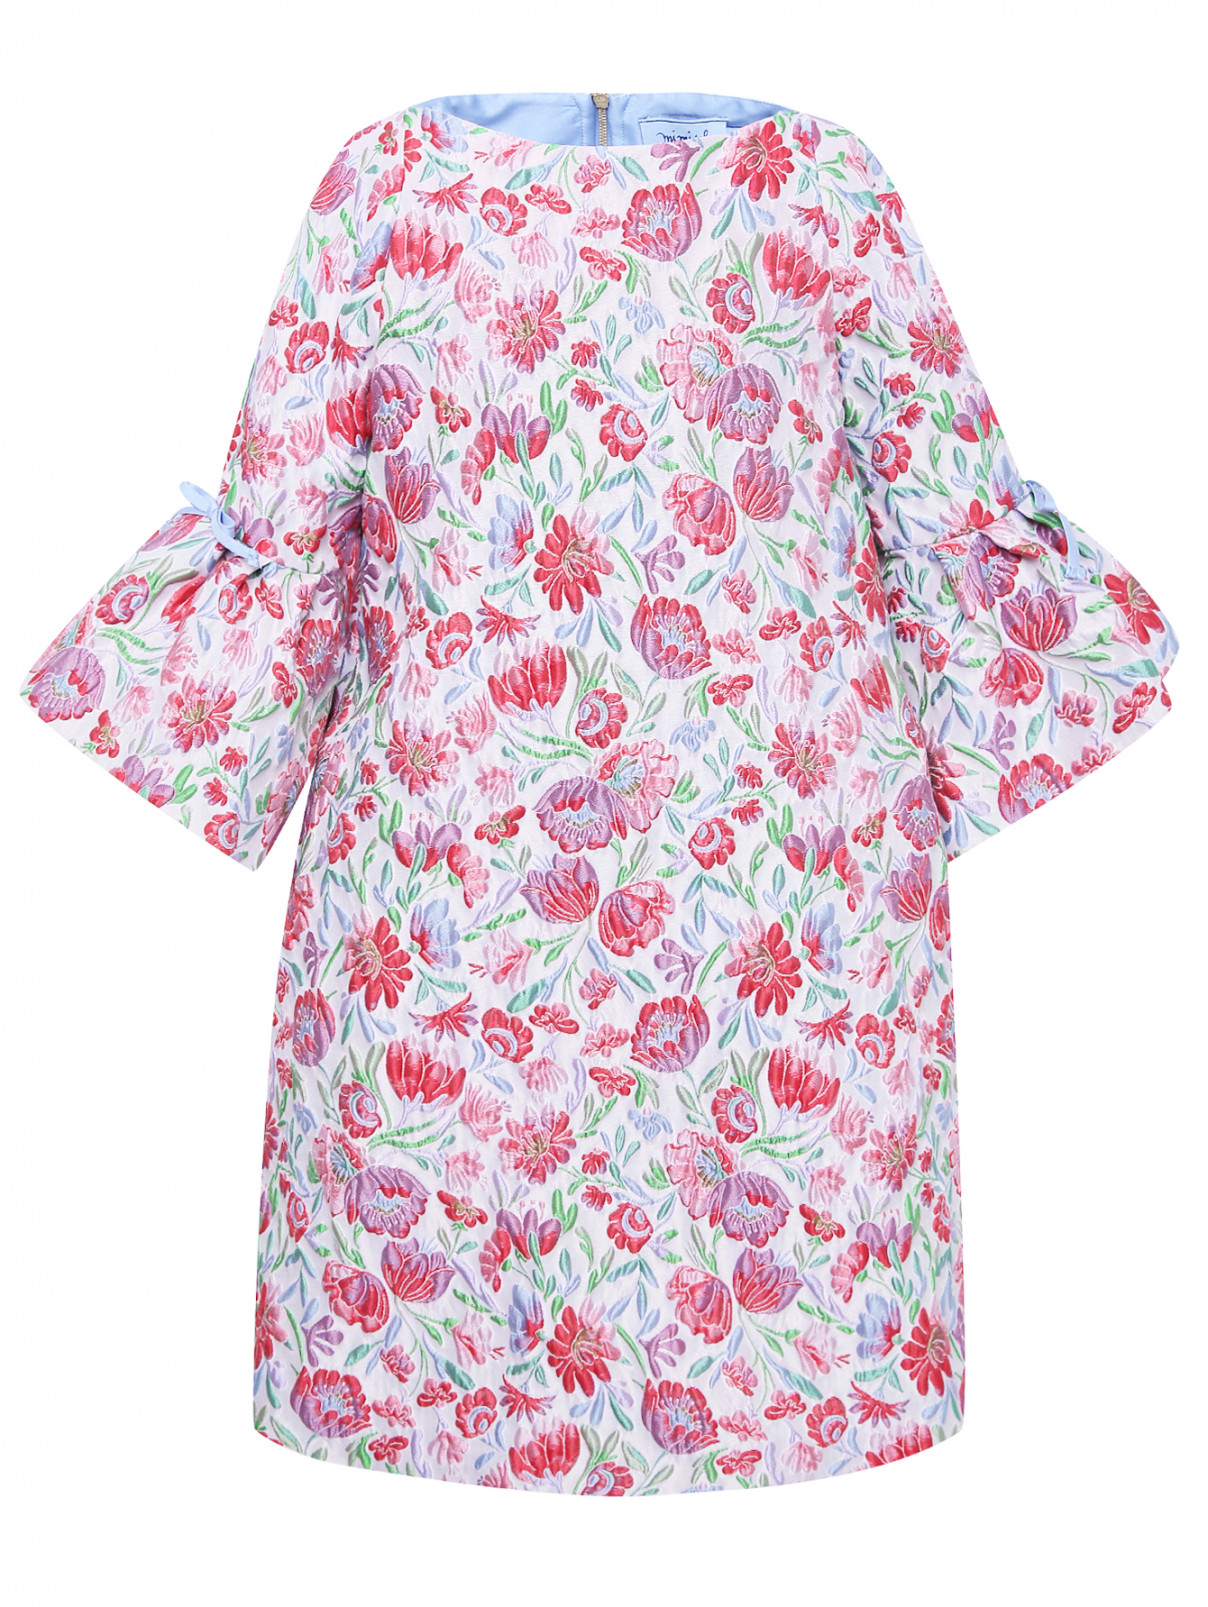 Платье из фактурного жаккарда MiMiSol  –  Общий вид  – Цвет:  Мультиколор